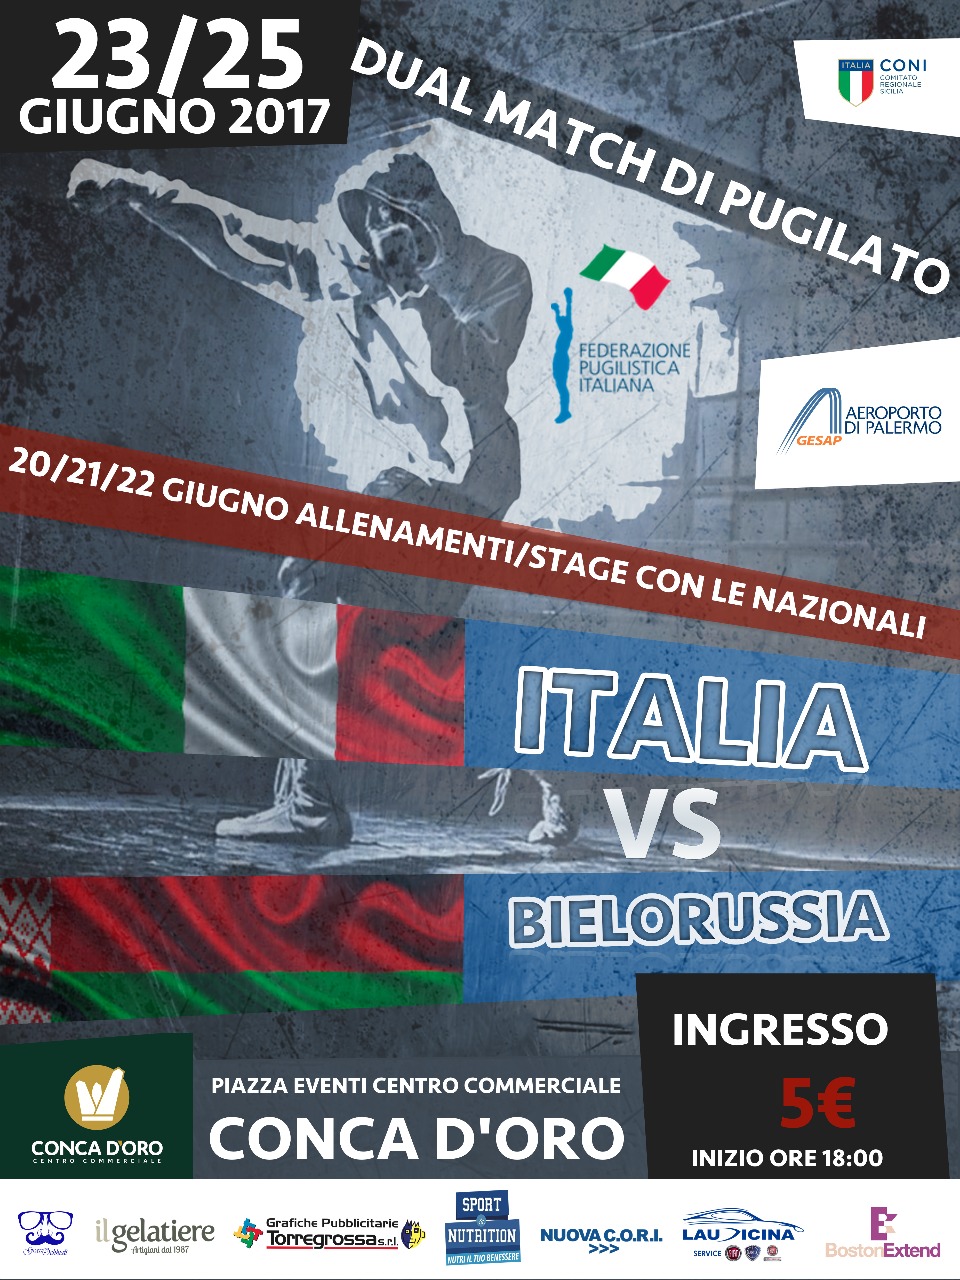 Il 23 e 25 Giugno a Palermo Doppia Sfida tra gli Azzurri Junior e la Bielorussia #ItaBoxing